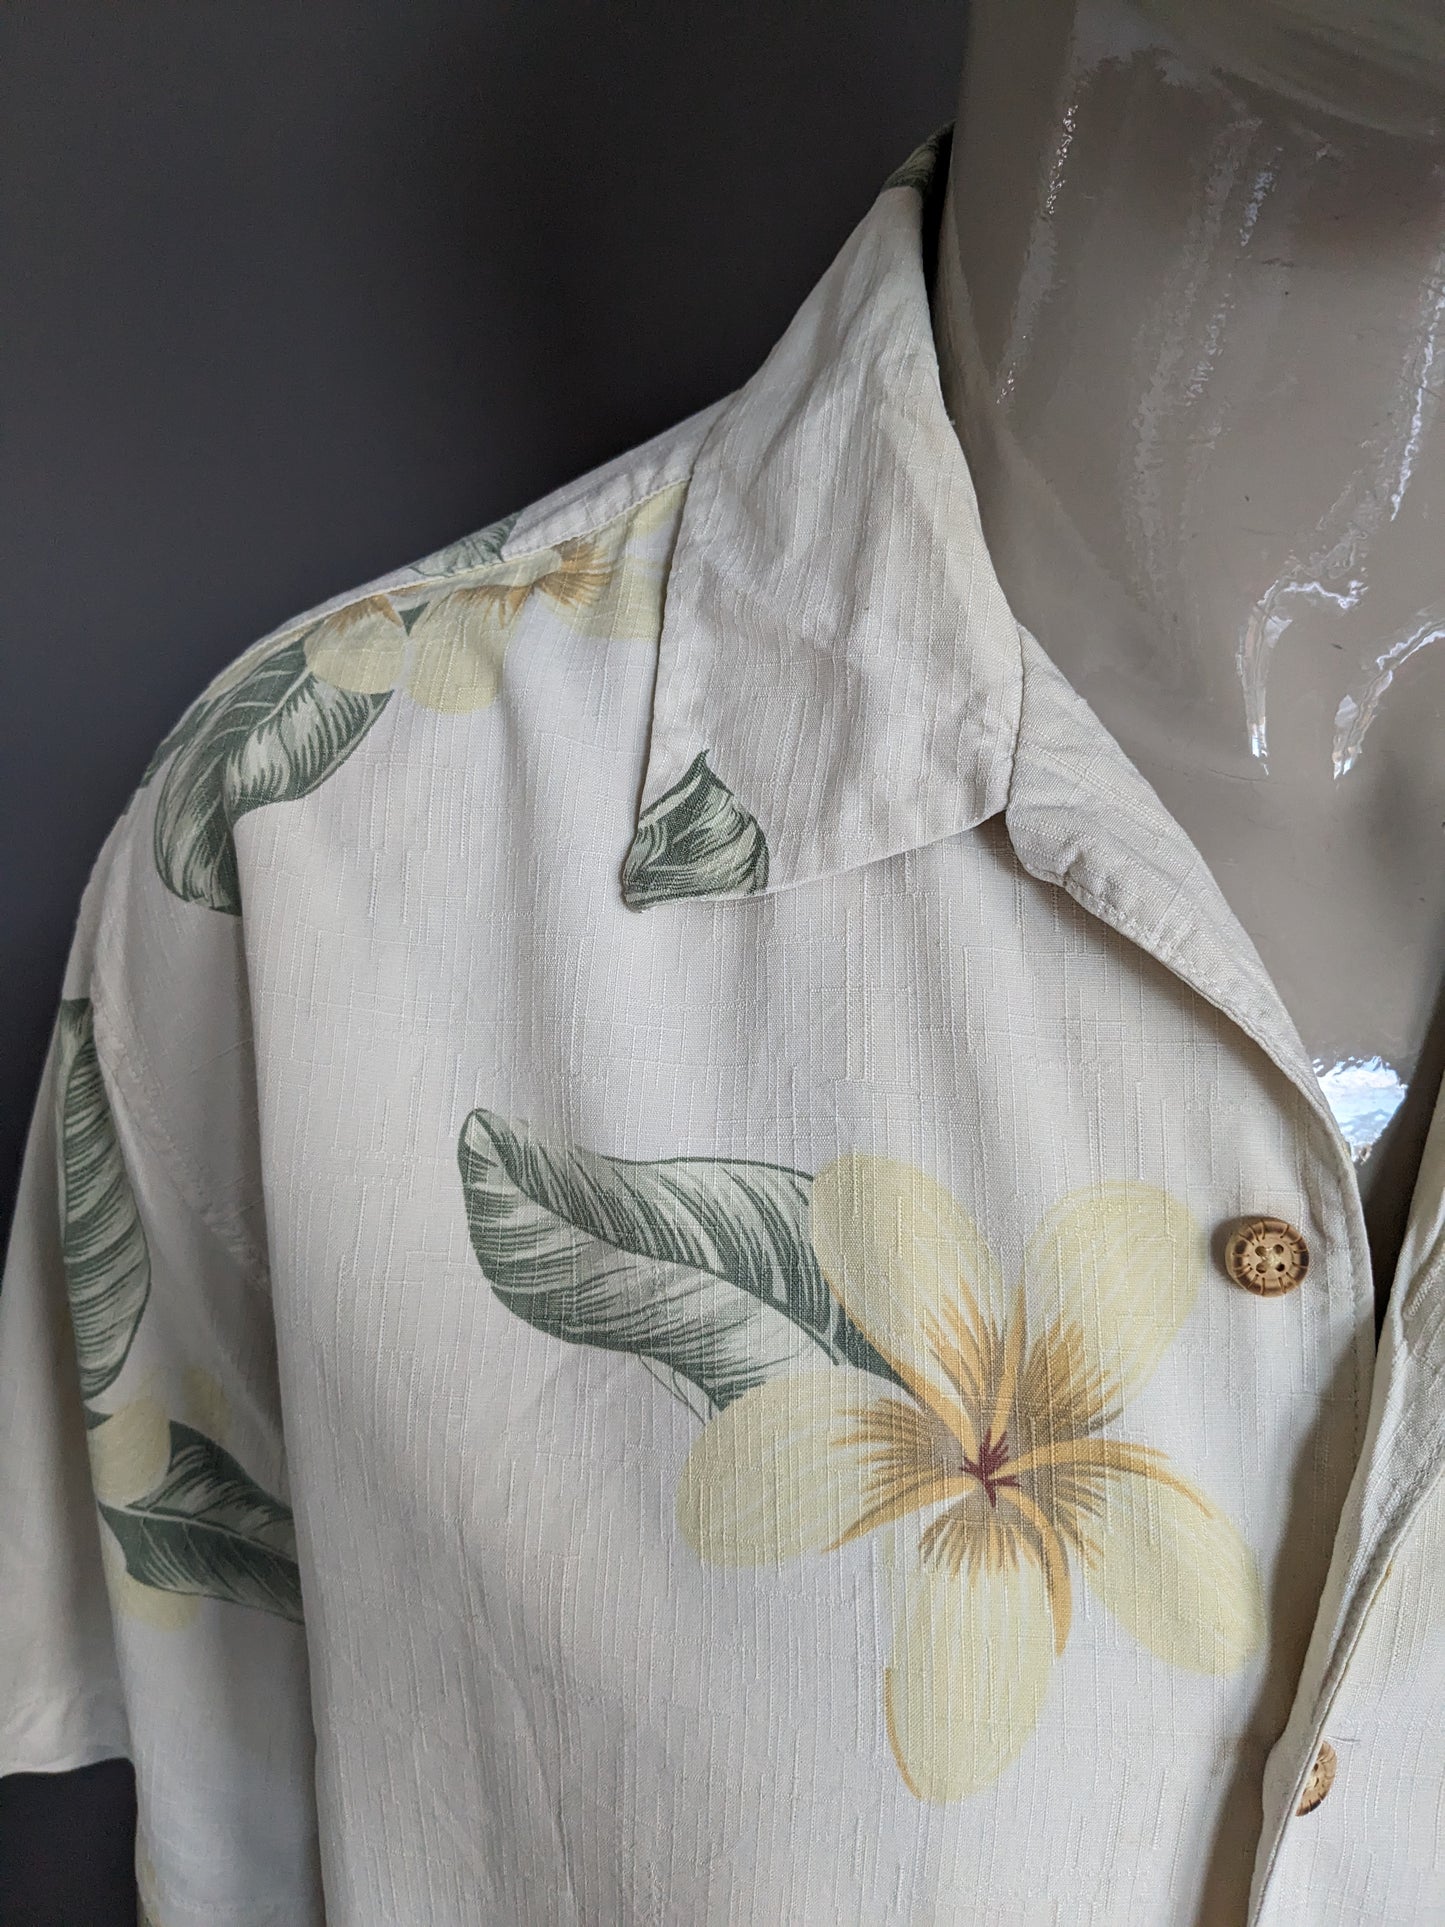 Giamaica jaxx Shirt corta hawaii originale. Silk con fiori verde giallo beige stampata. Taglia XL.